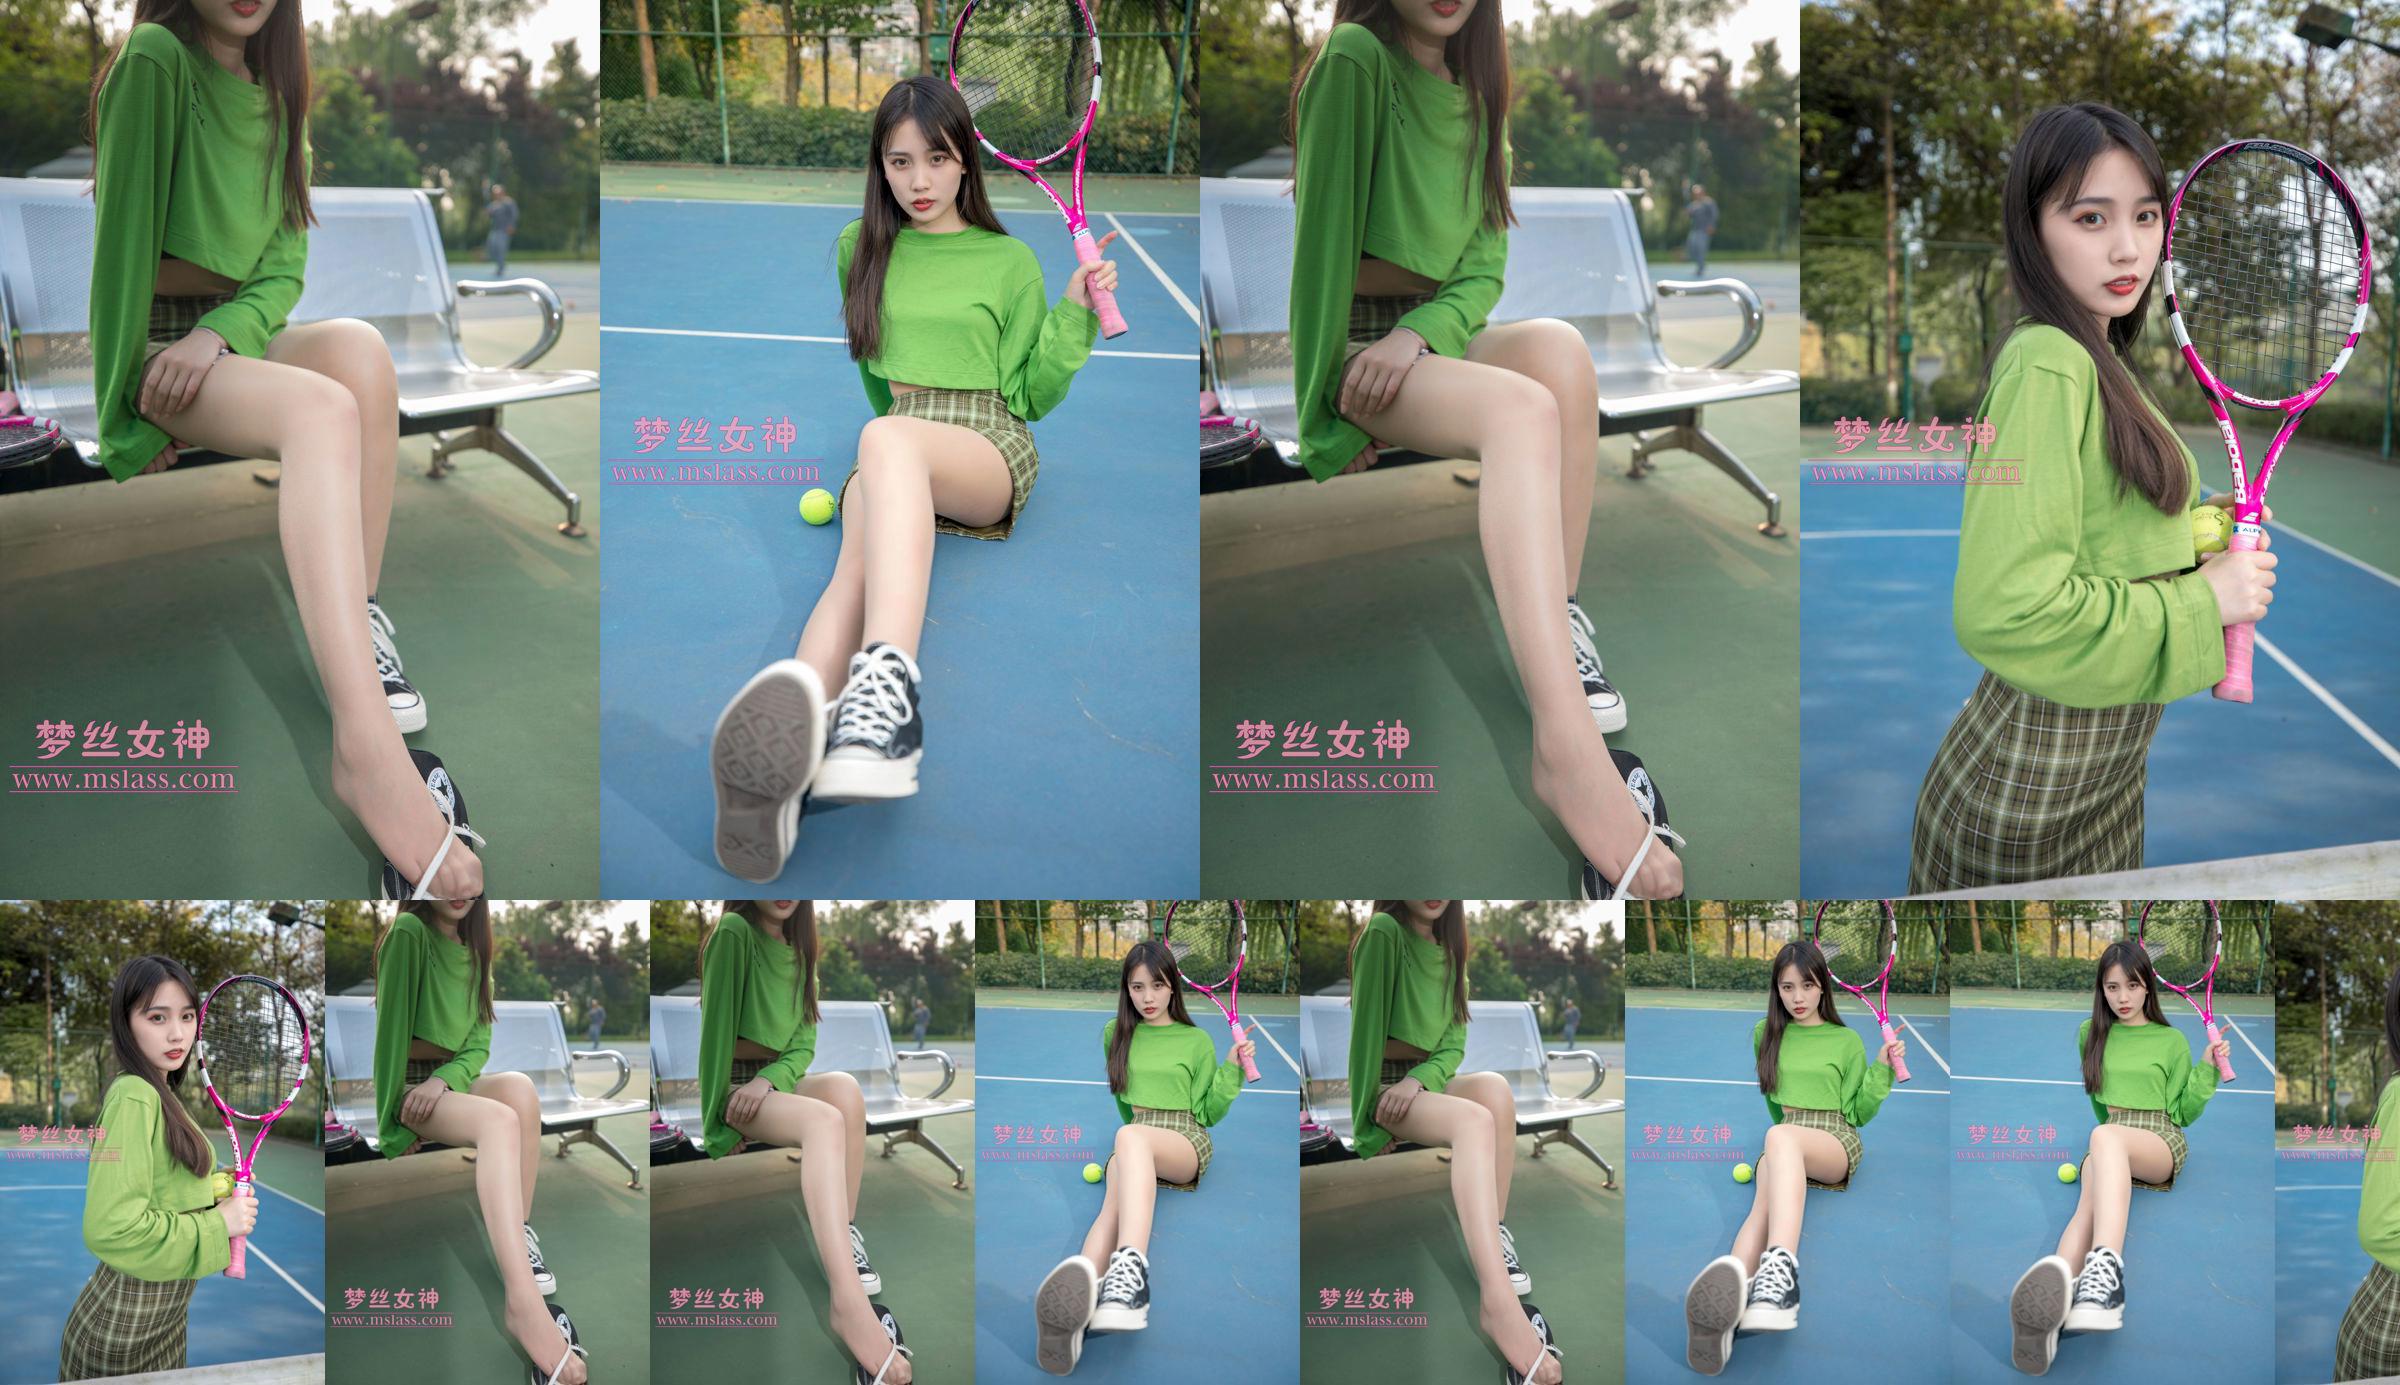 [Diosa de los sueños MSLASS] Chica del tenis Xiang Xuan No.1b63df Página 3